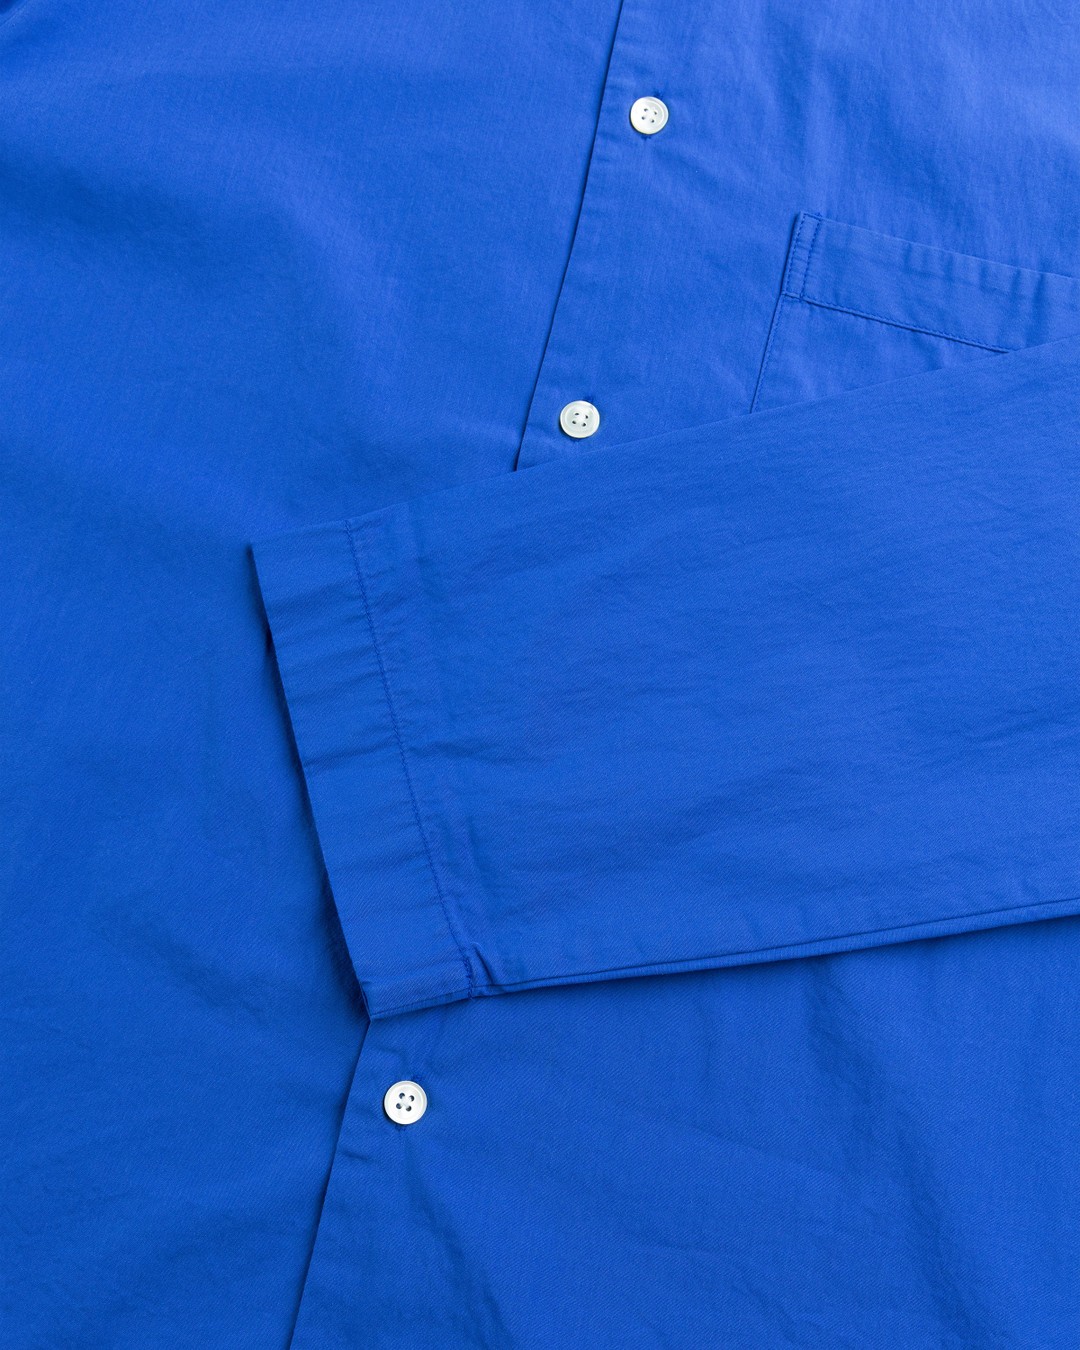 Tekla – Cotton Poplin Pyjamas Shirt Royal Blue - Pyjamas - Blue - Image 6